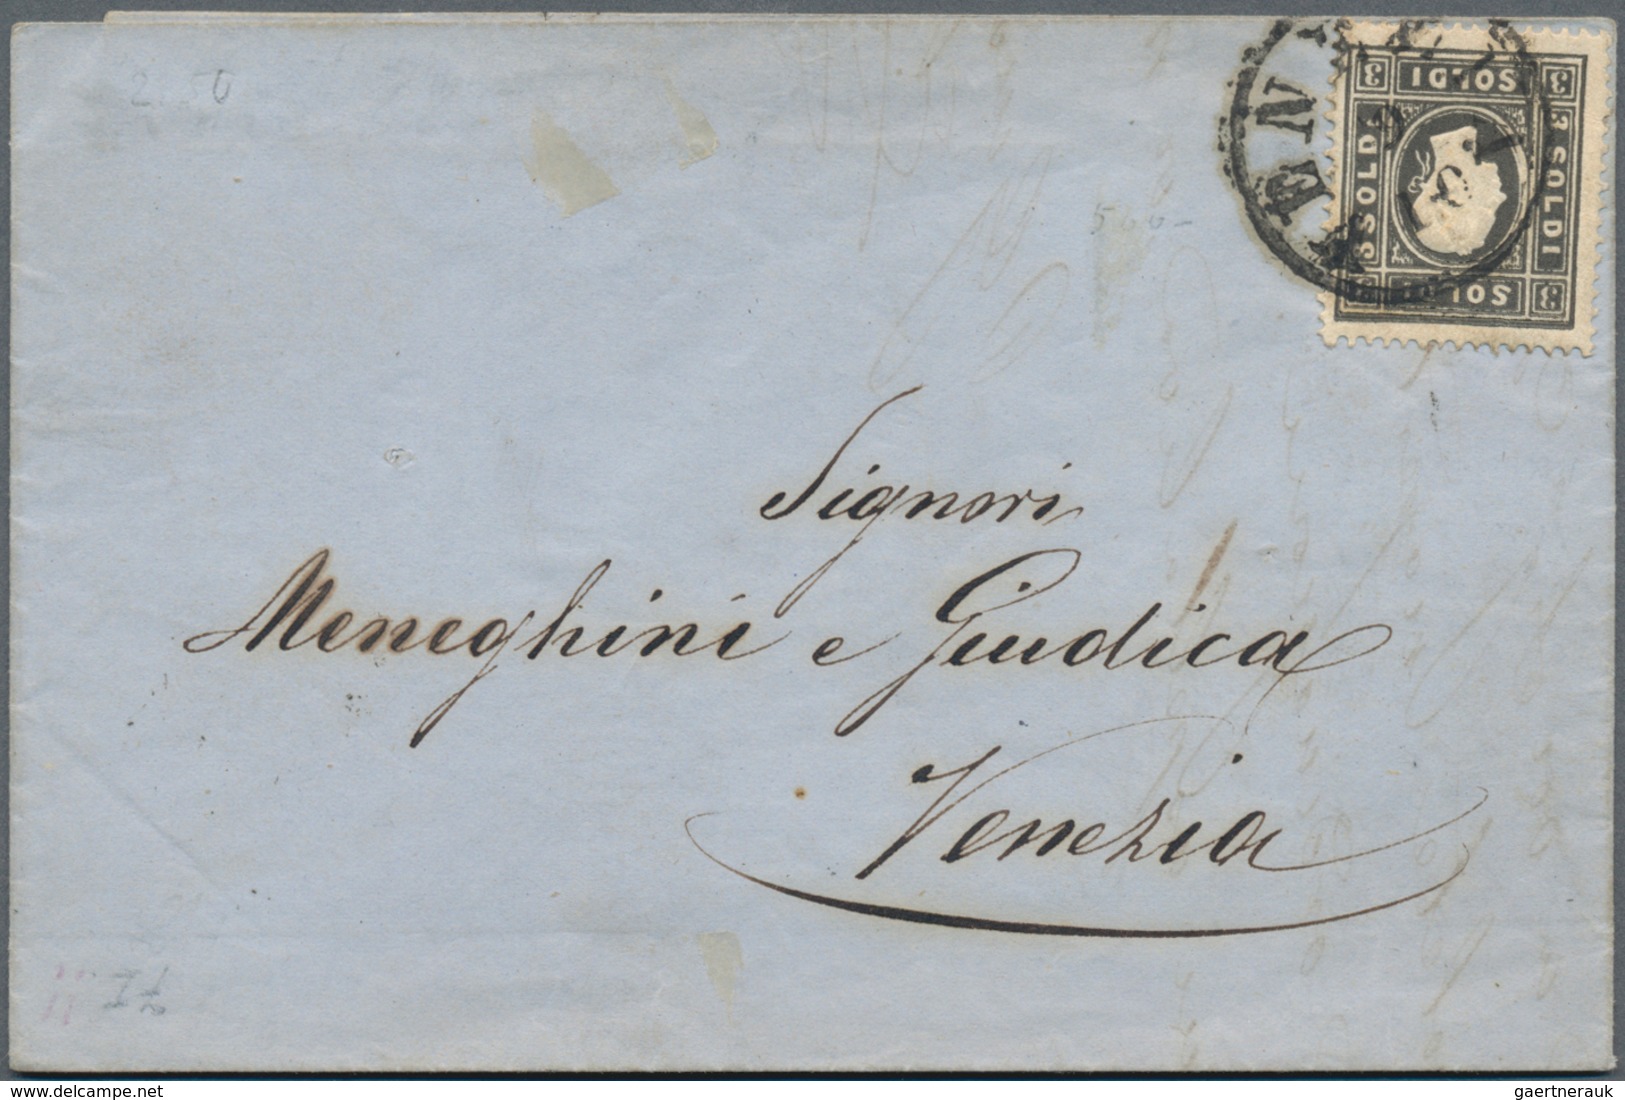 Österreich: 1857/1916 (ca.), vielseitige Partie von ca. 135 Briefen und gebrauchten Ganzsachen mit S